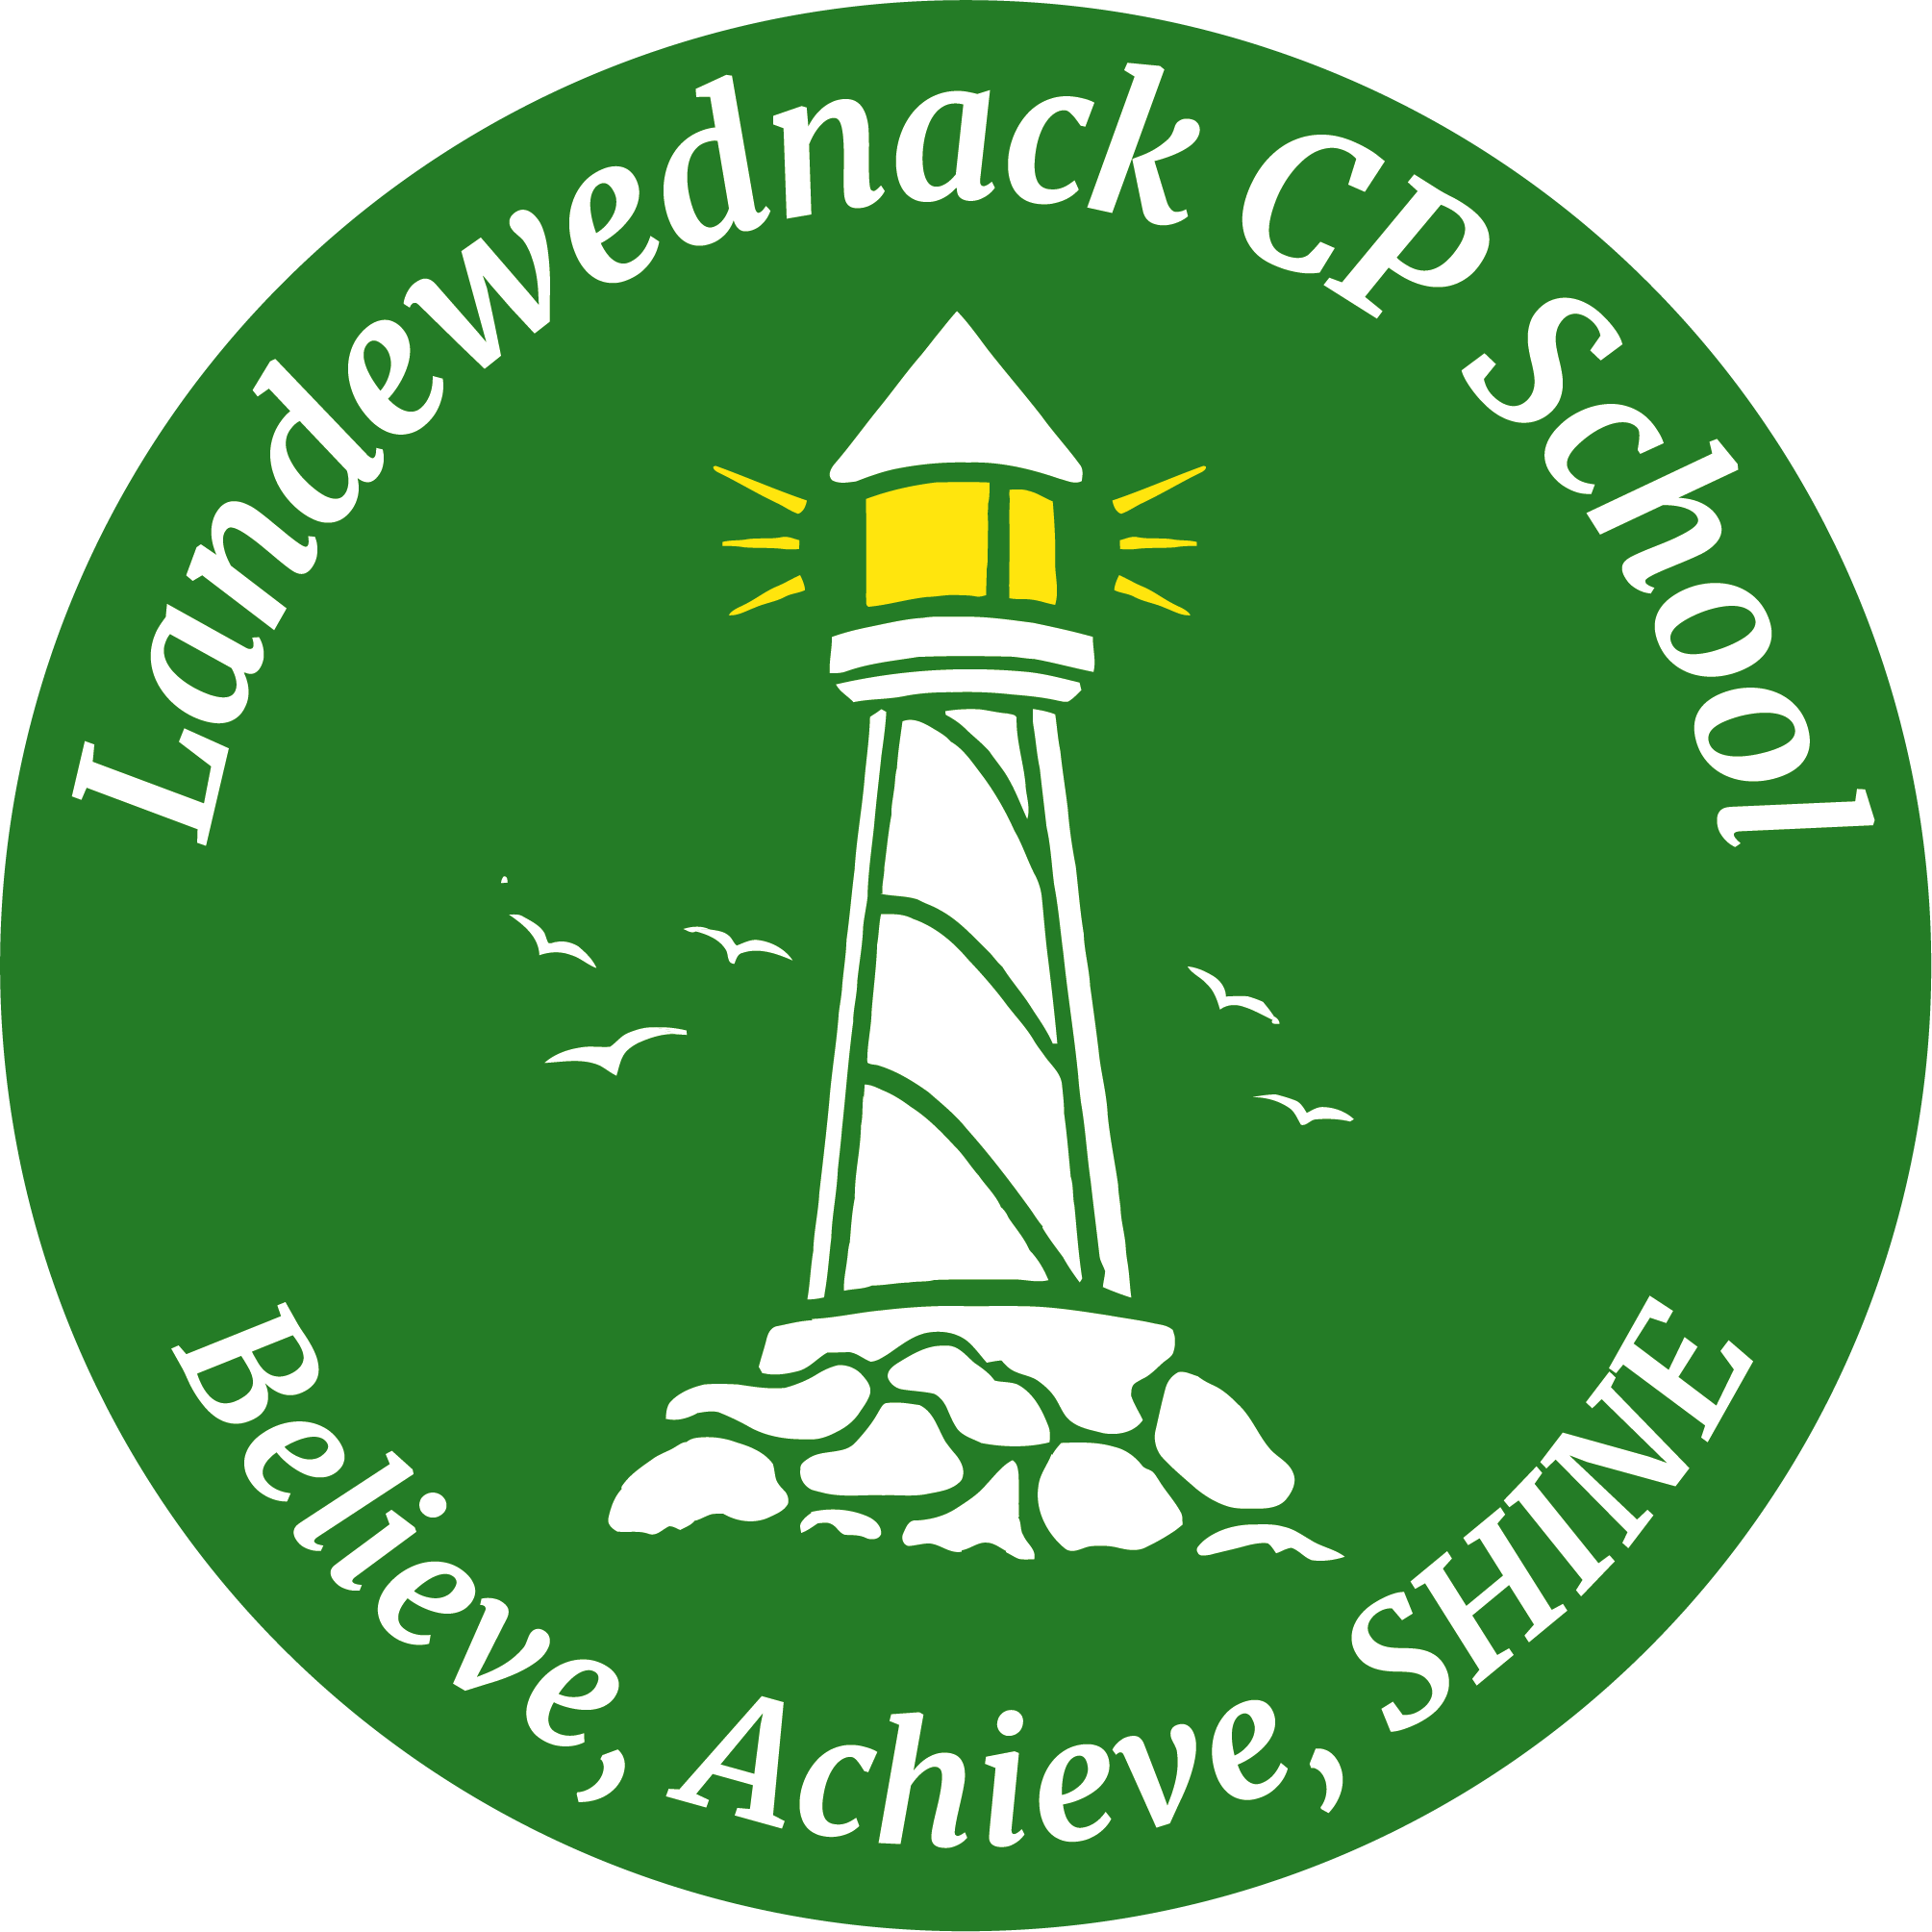 Landewednack CP School